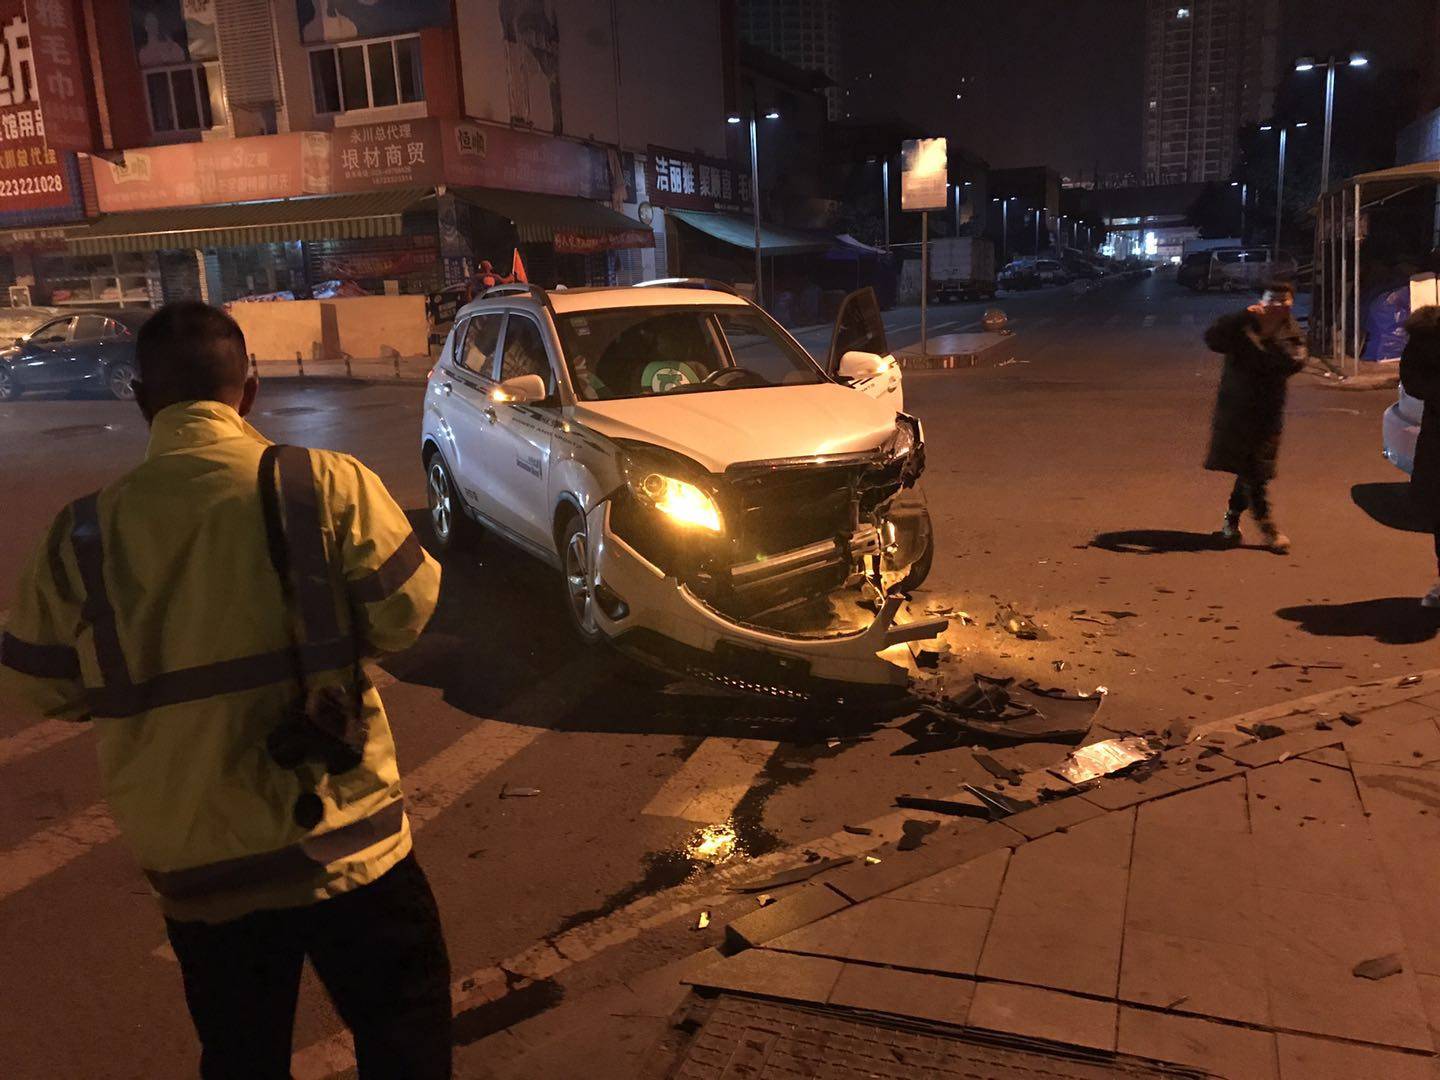 声音打破安静夜 永川商贸城附近两车相撞